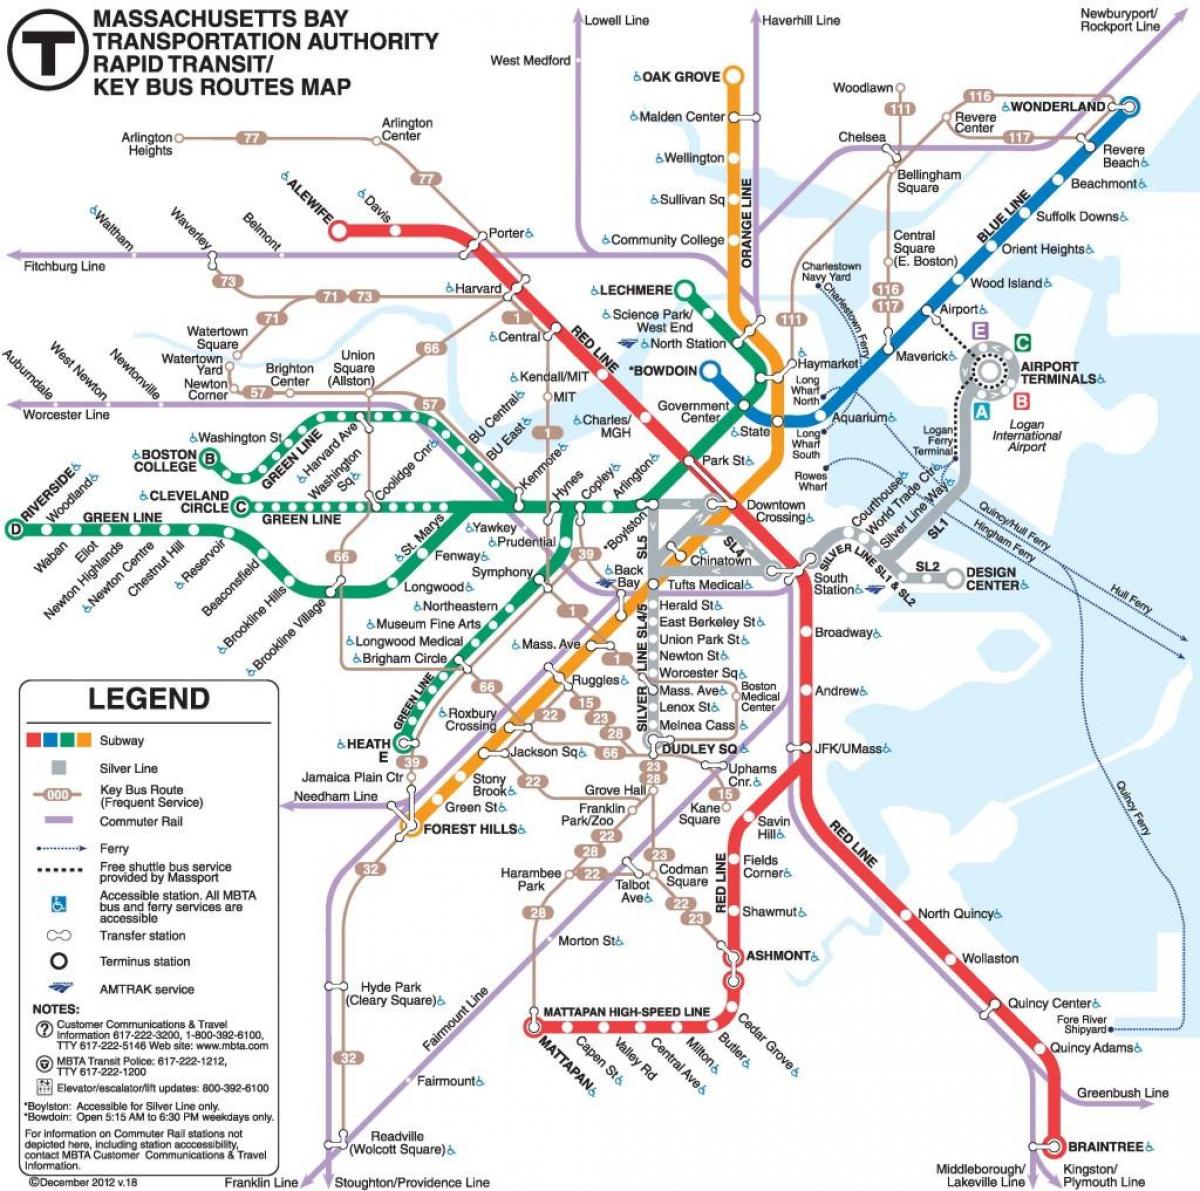 Philadelphia garraio publikoaren mapa